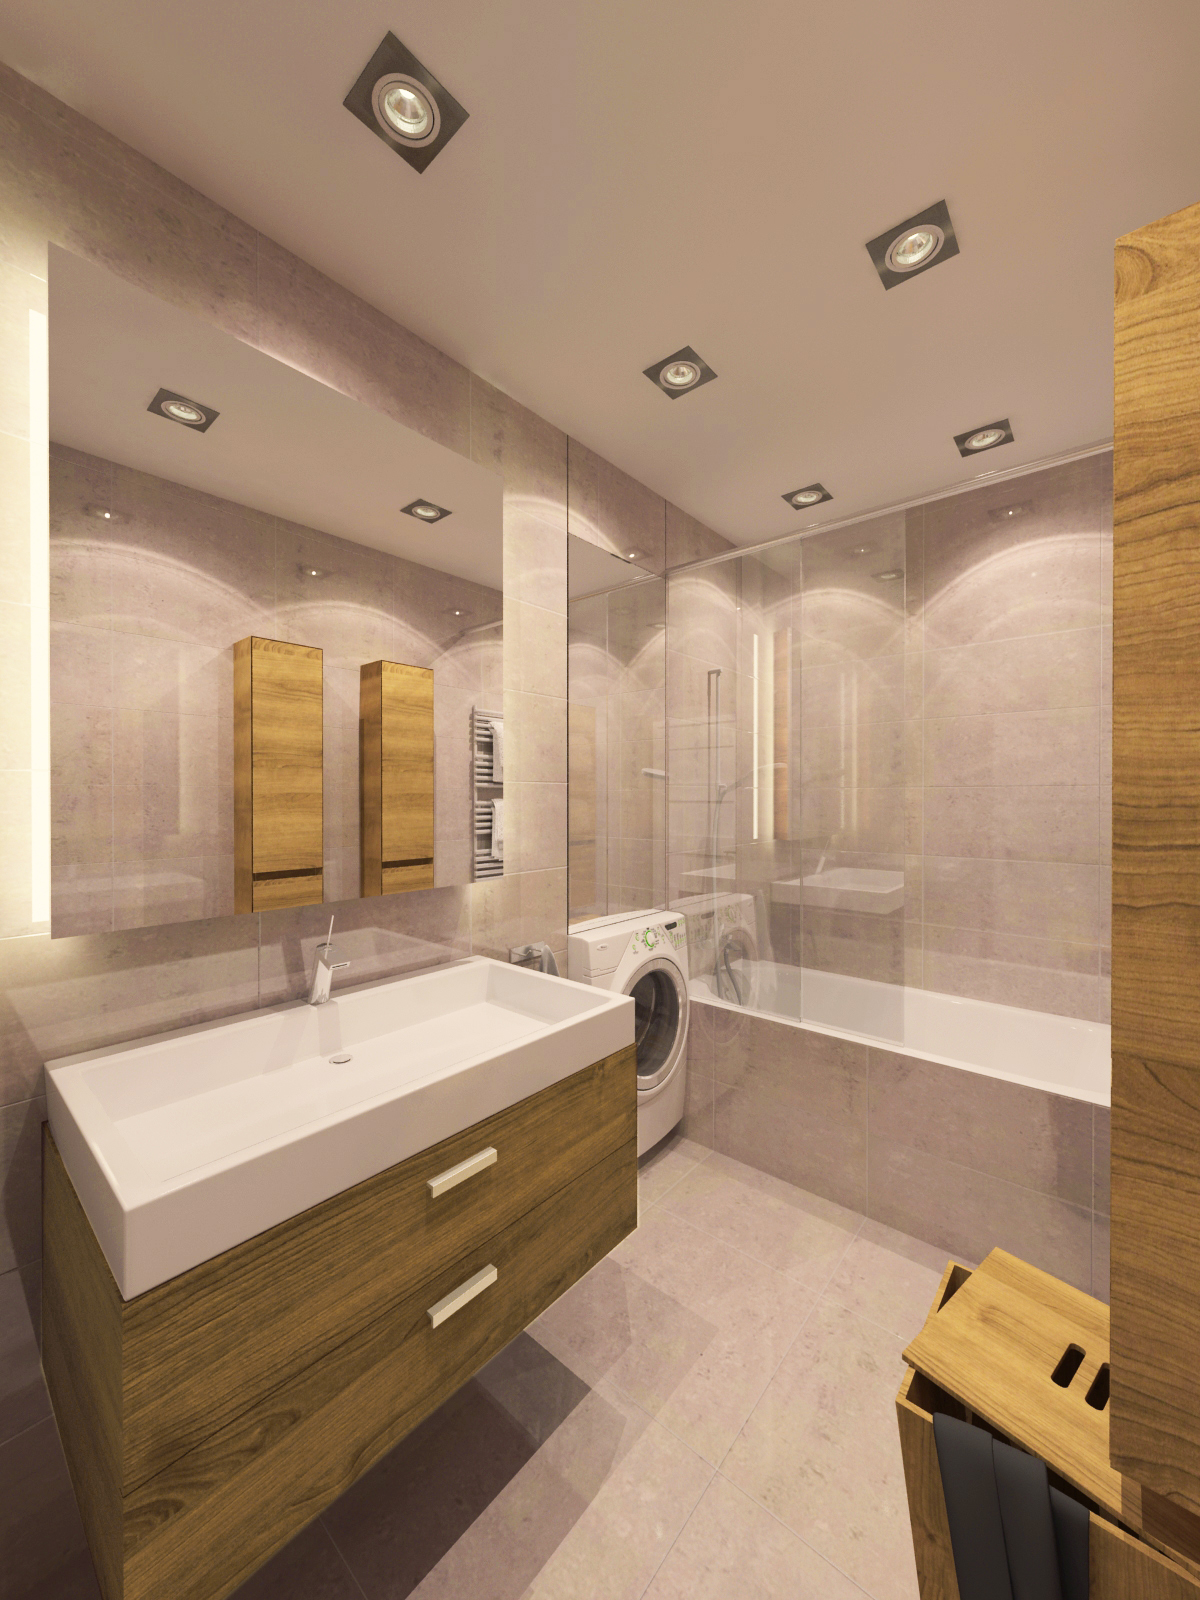 Látványterv Fürdőszoba / Architectural visualization Bathroom